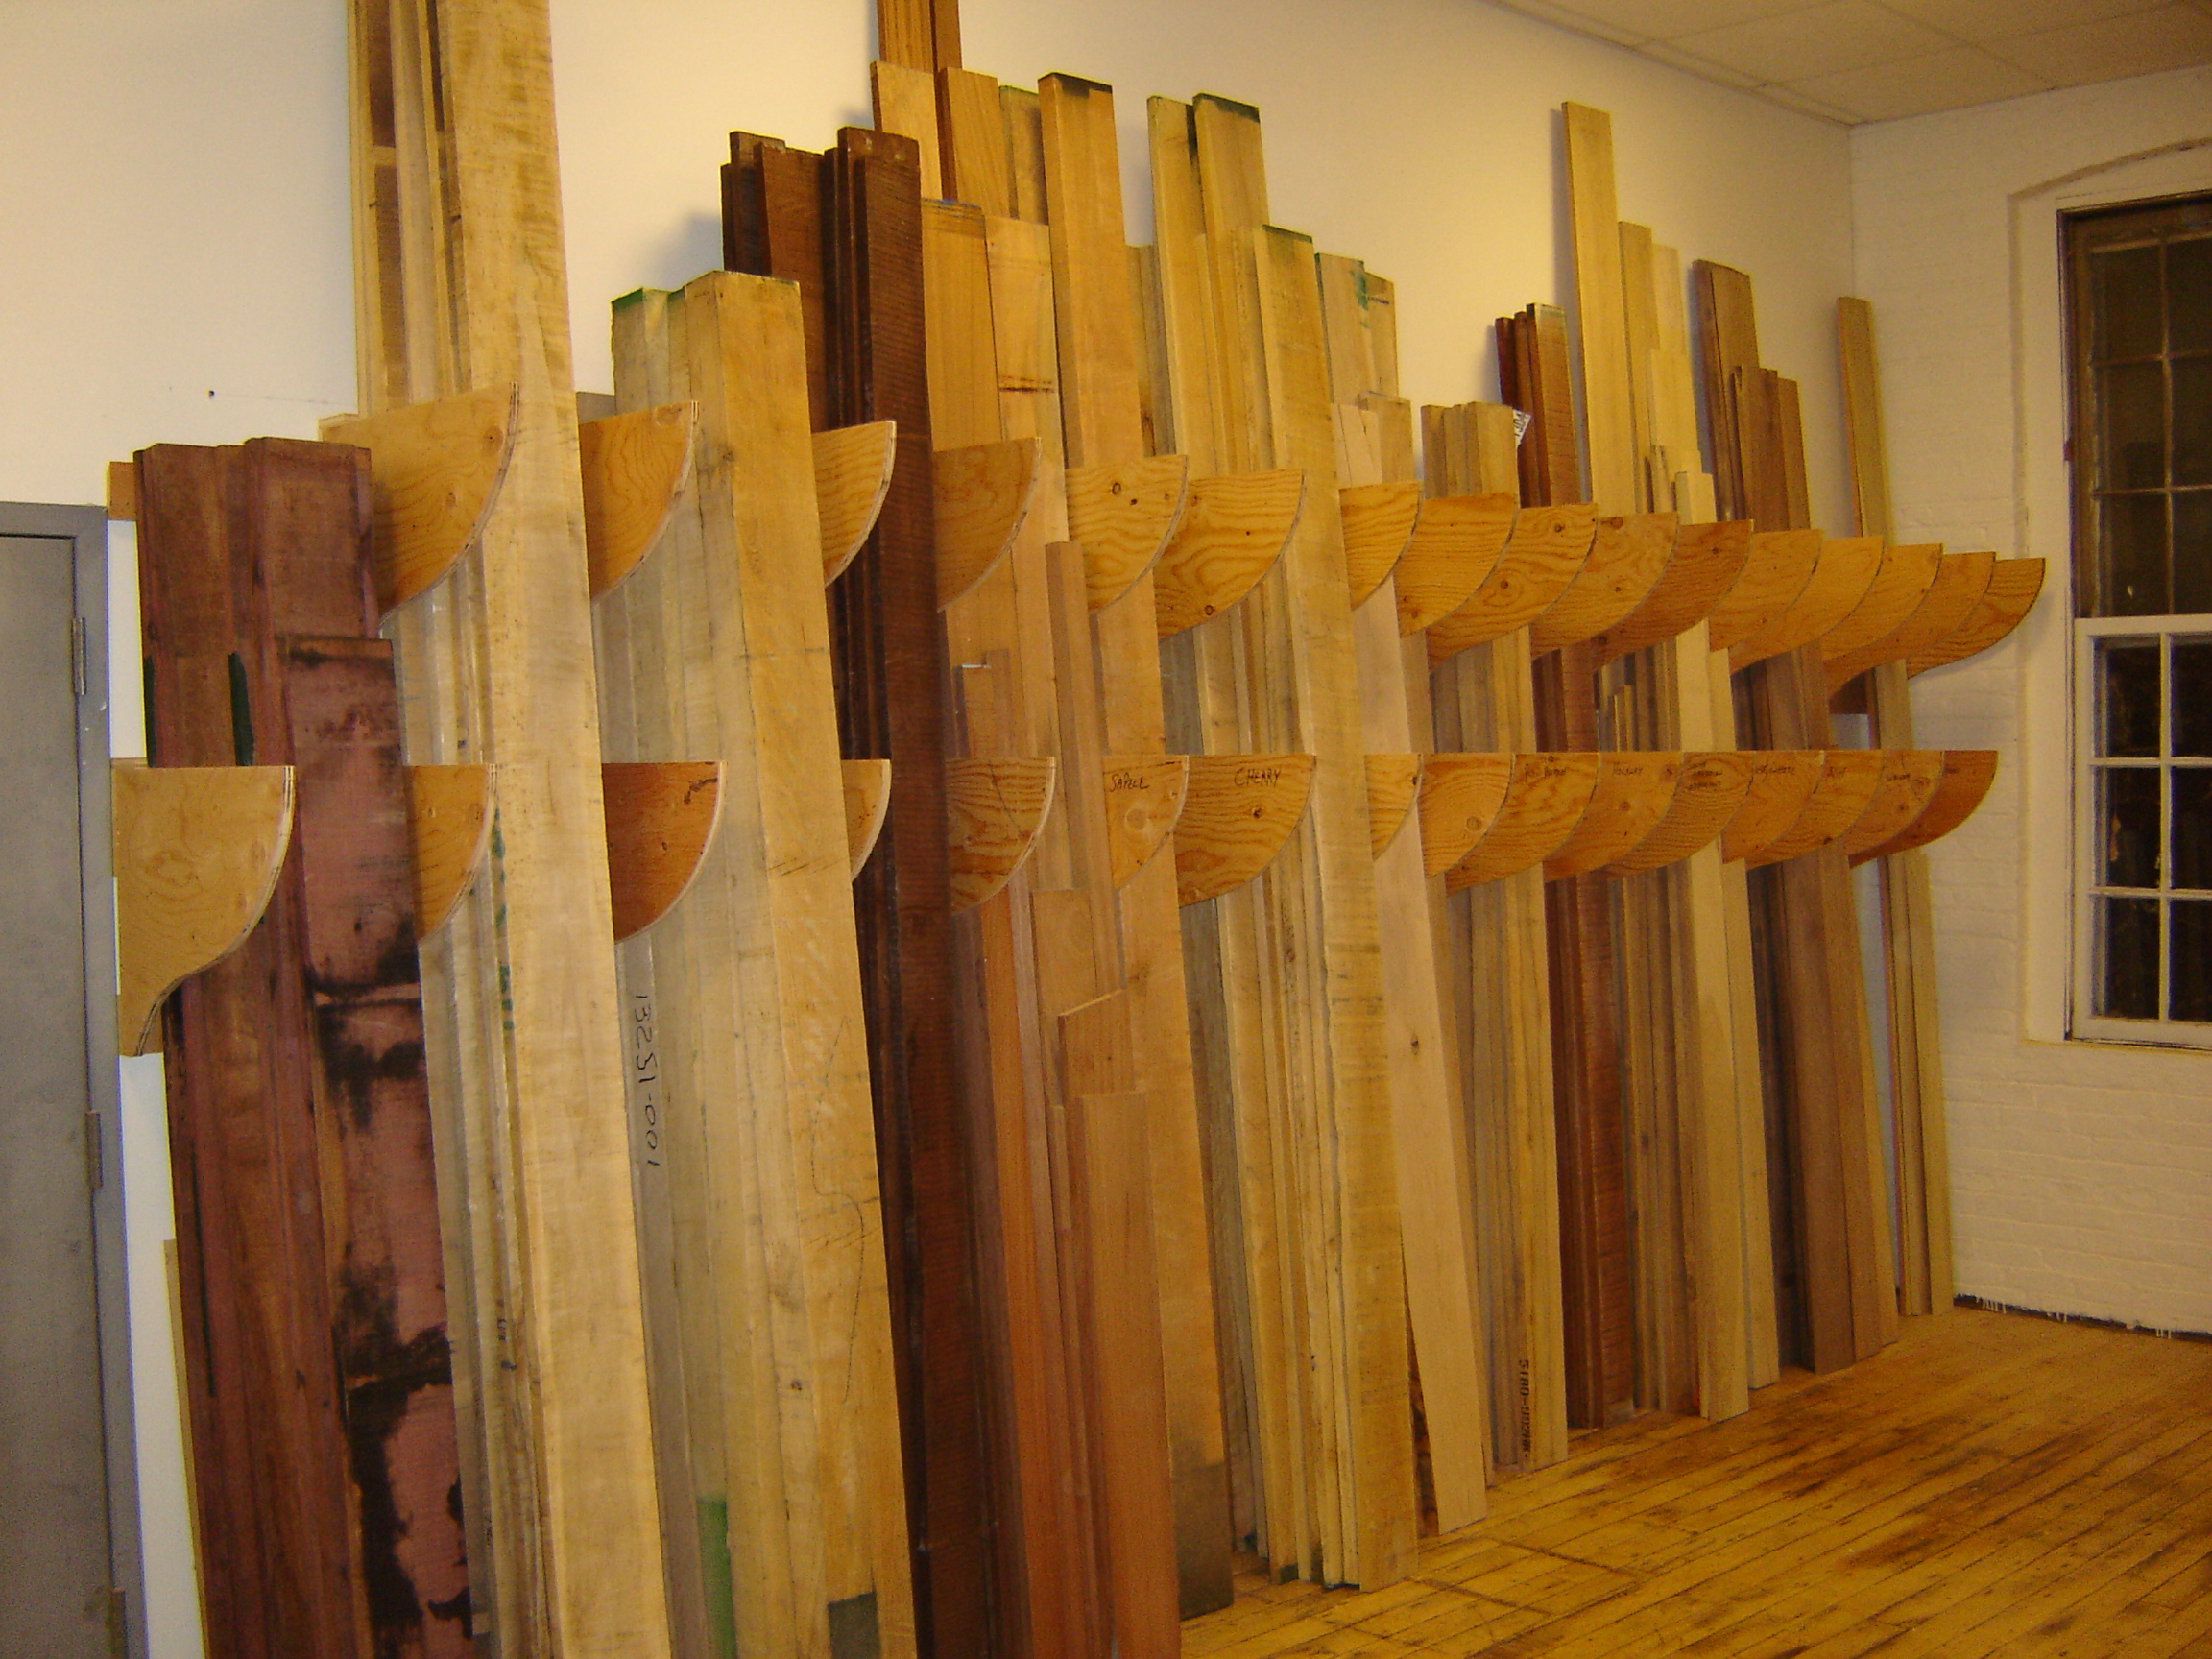 AMHS lumber in the racks